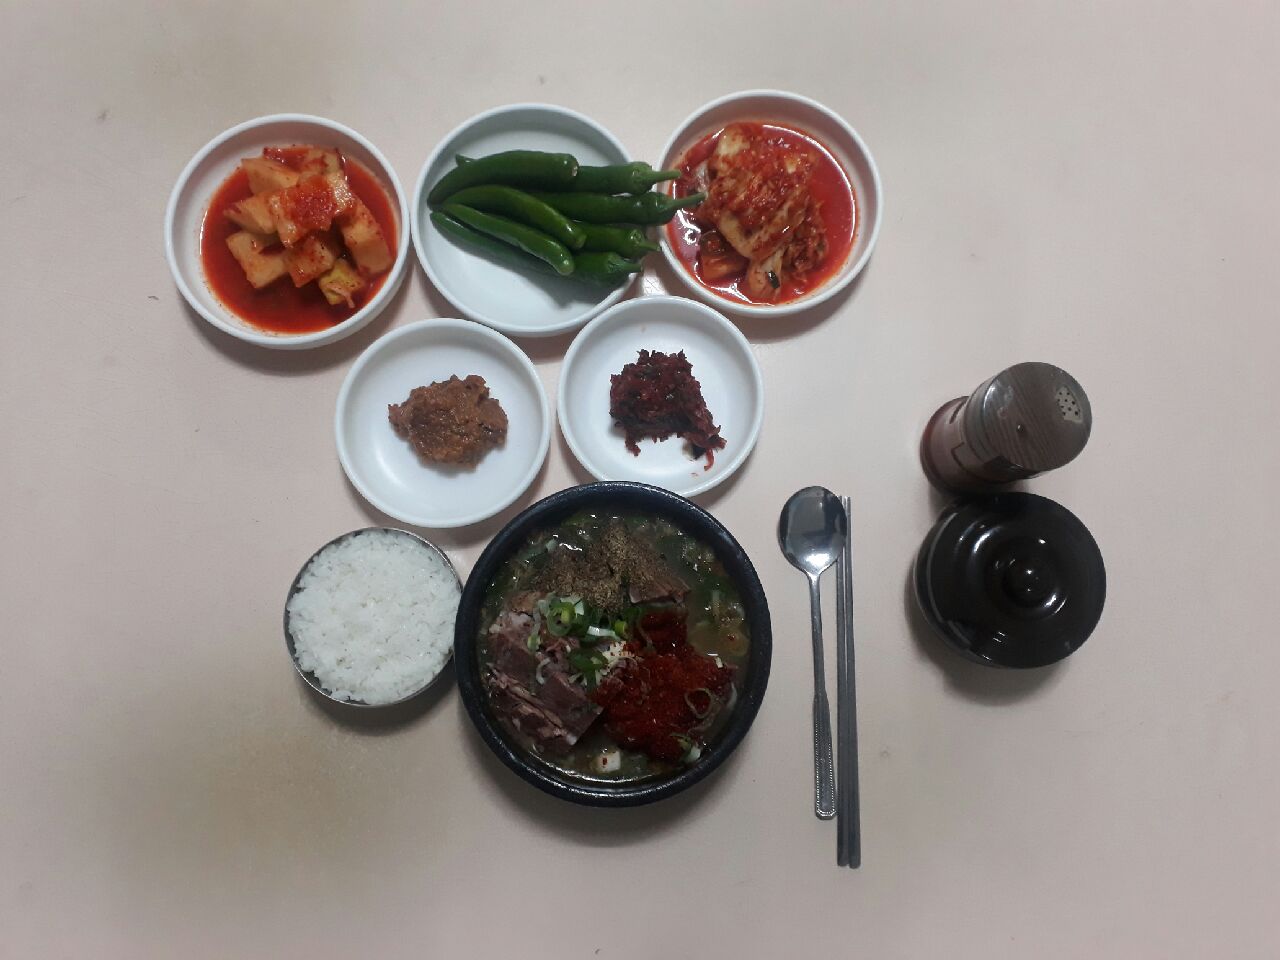 출처 : 복서울식당 공식 점주 제공